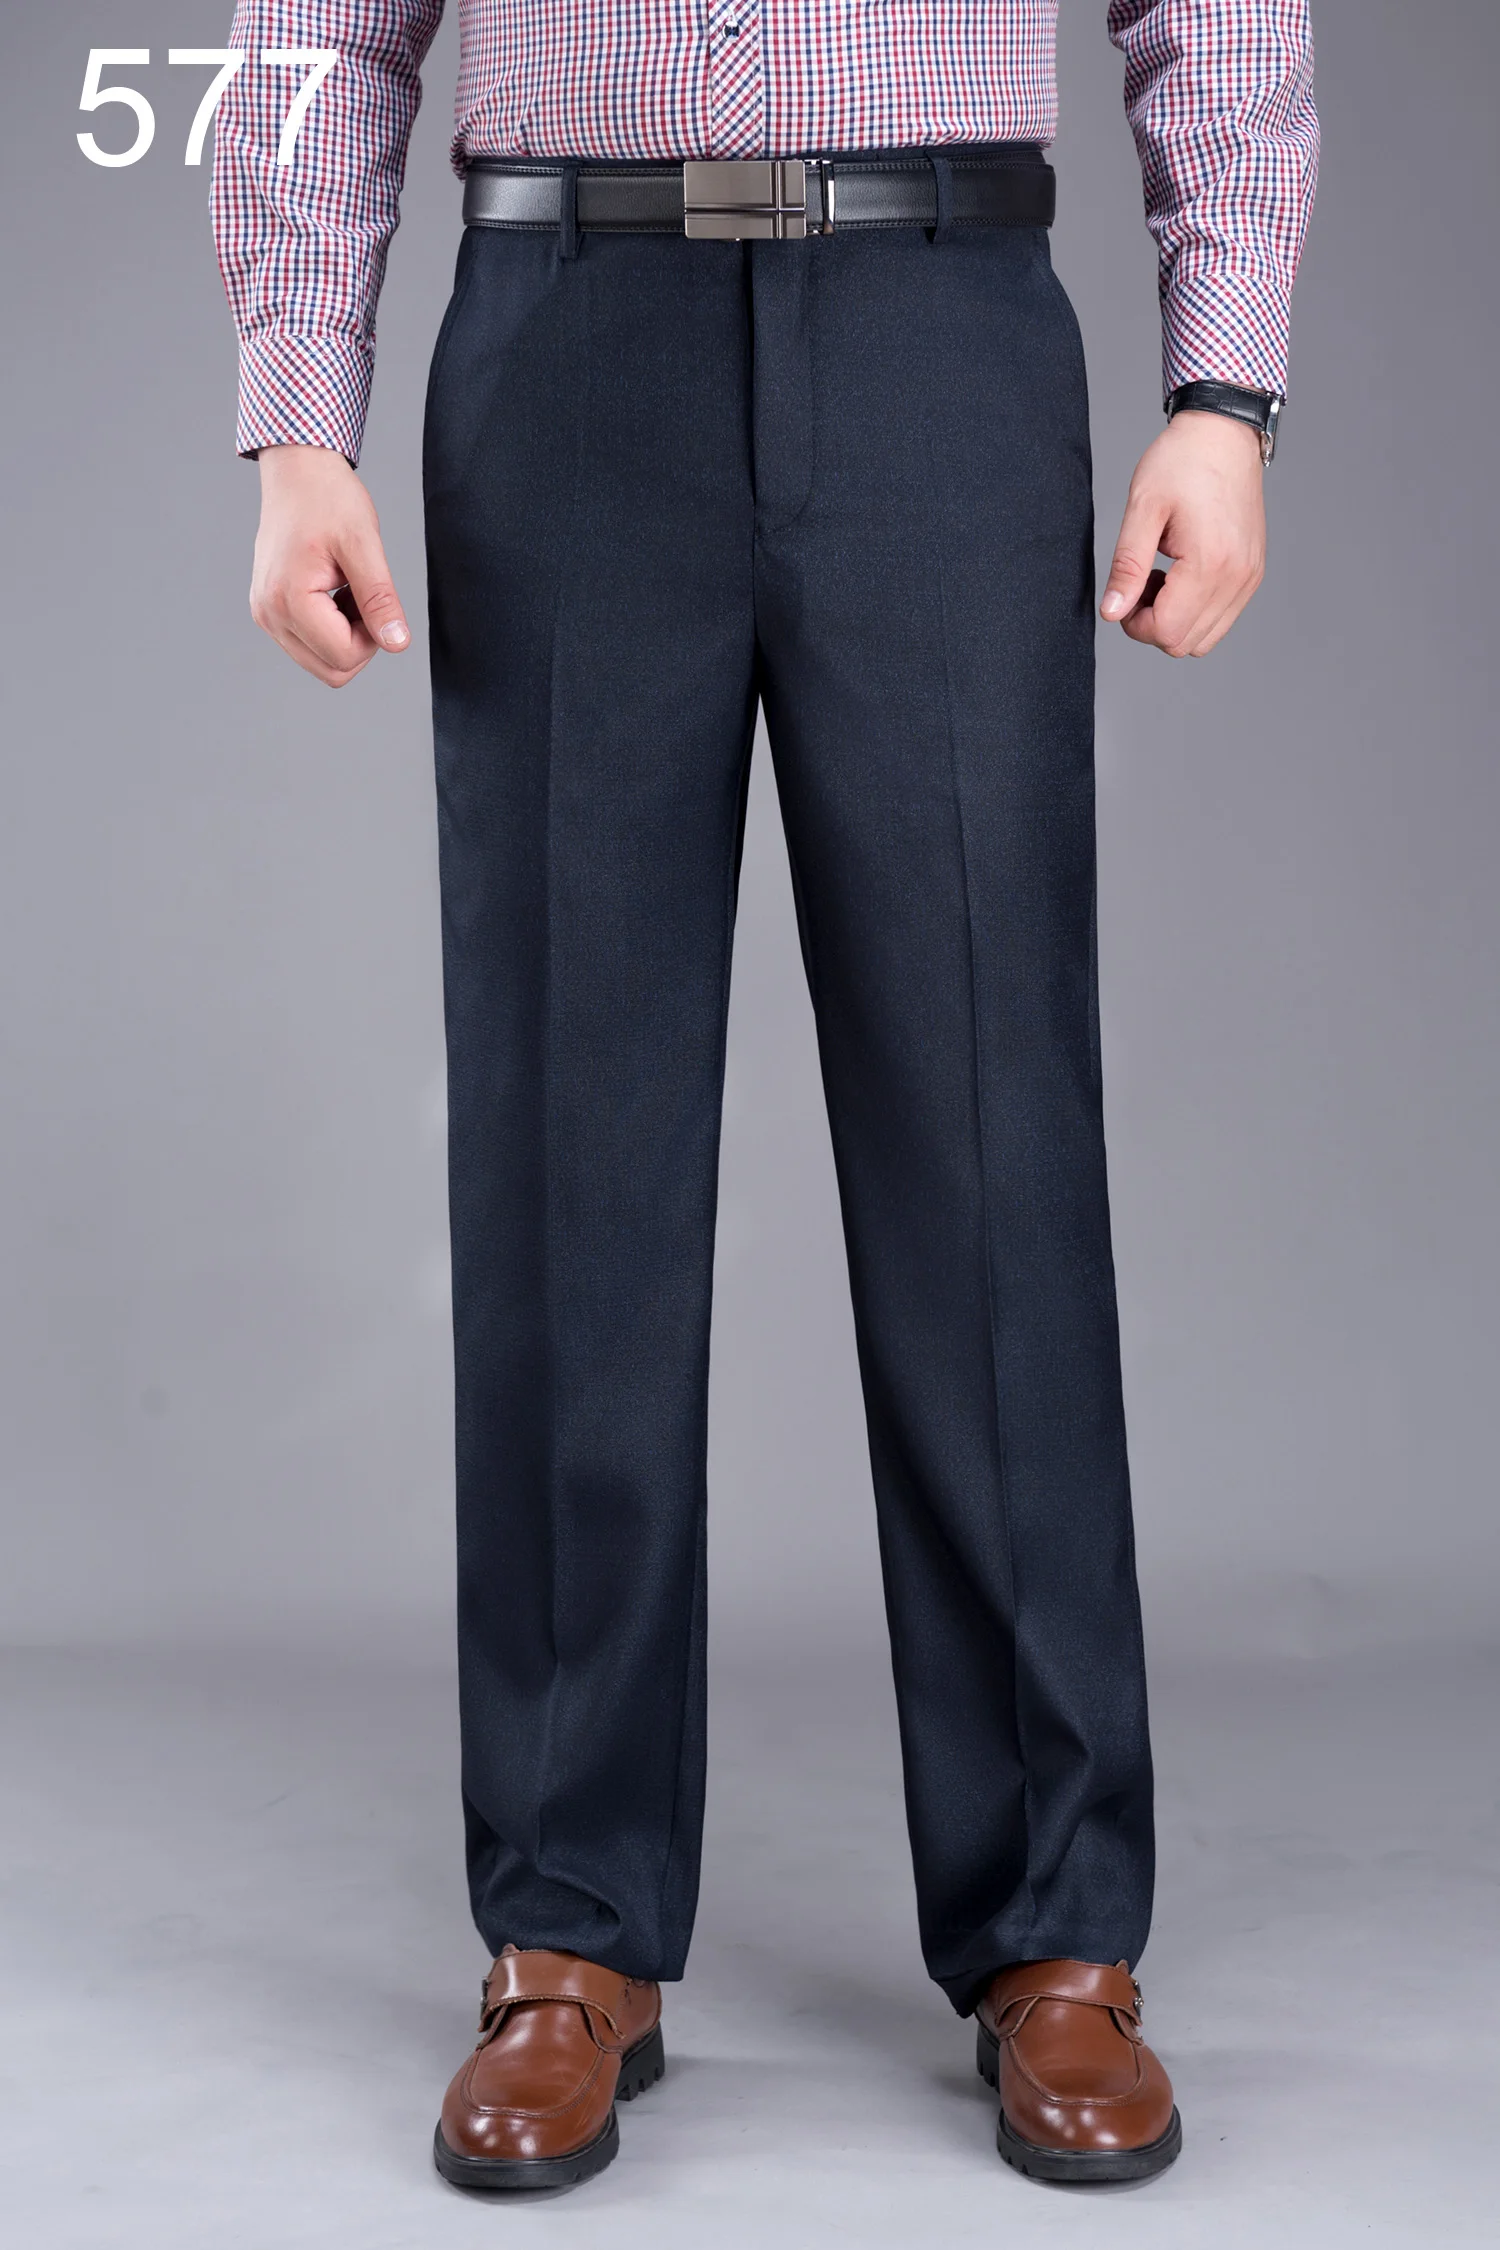 Mu Yuan Yang 50% скидка мужские шелковые брюки 40 42 44 деловые повседневные длинные брюки для мужчин среднего возраста прямые рабочие брюки